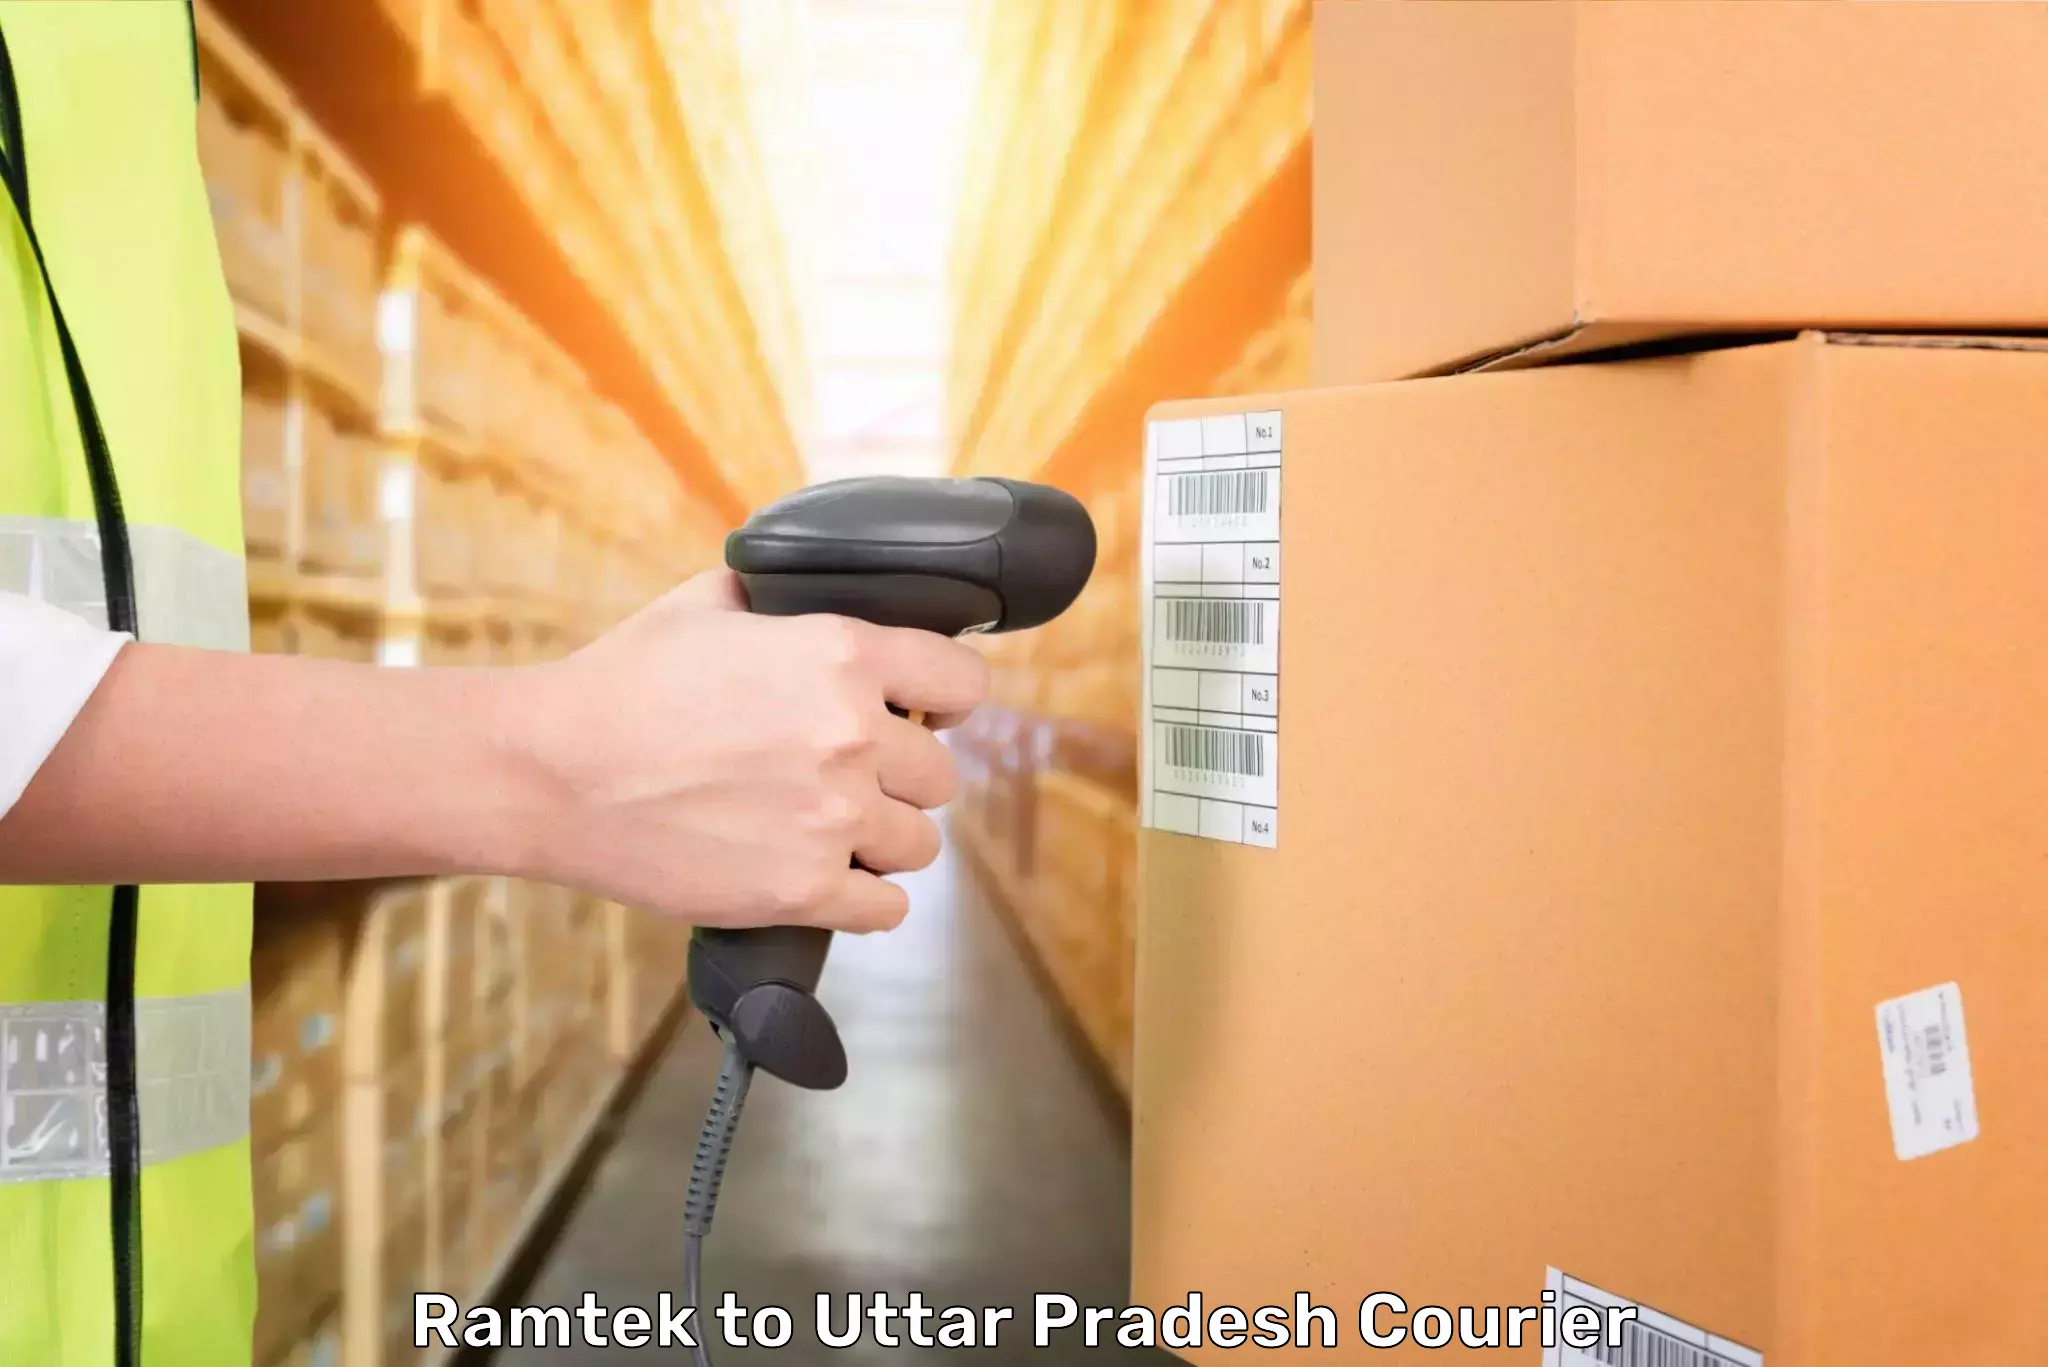 Baggage shipping experts Ramtek to Kheragarh